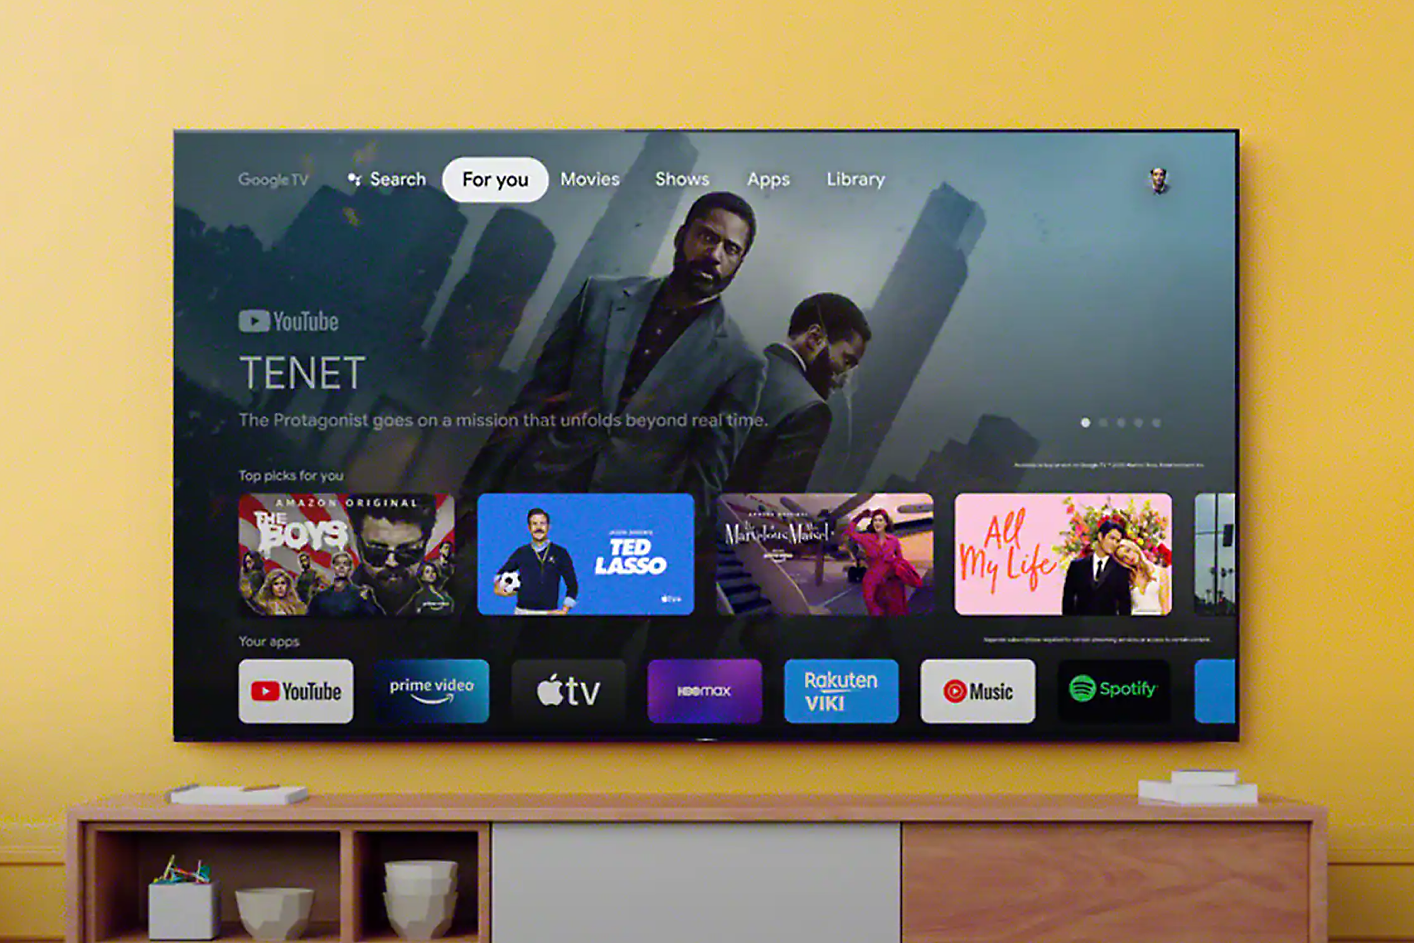 Màn hình TV hiển thị giao diện với điều hướng tìm kiếm và lựa chọn ứng dụng, với một cảnh từ “Tenet” trên màn hình trong nền.